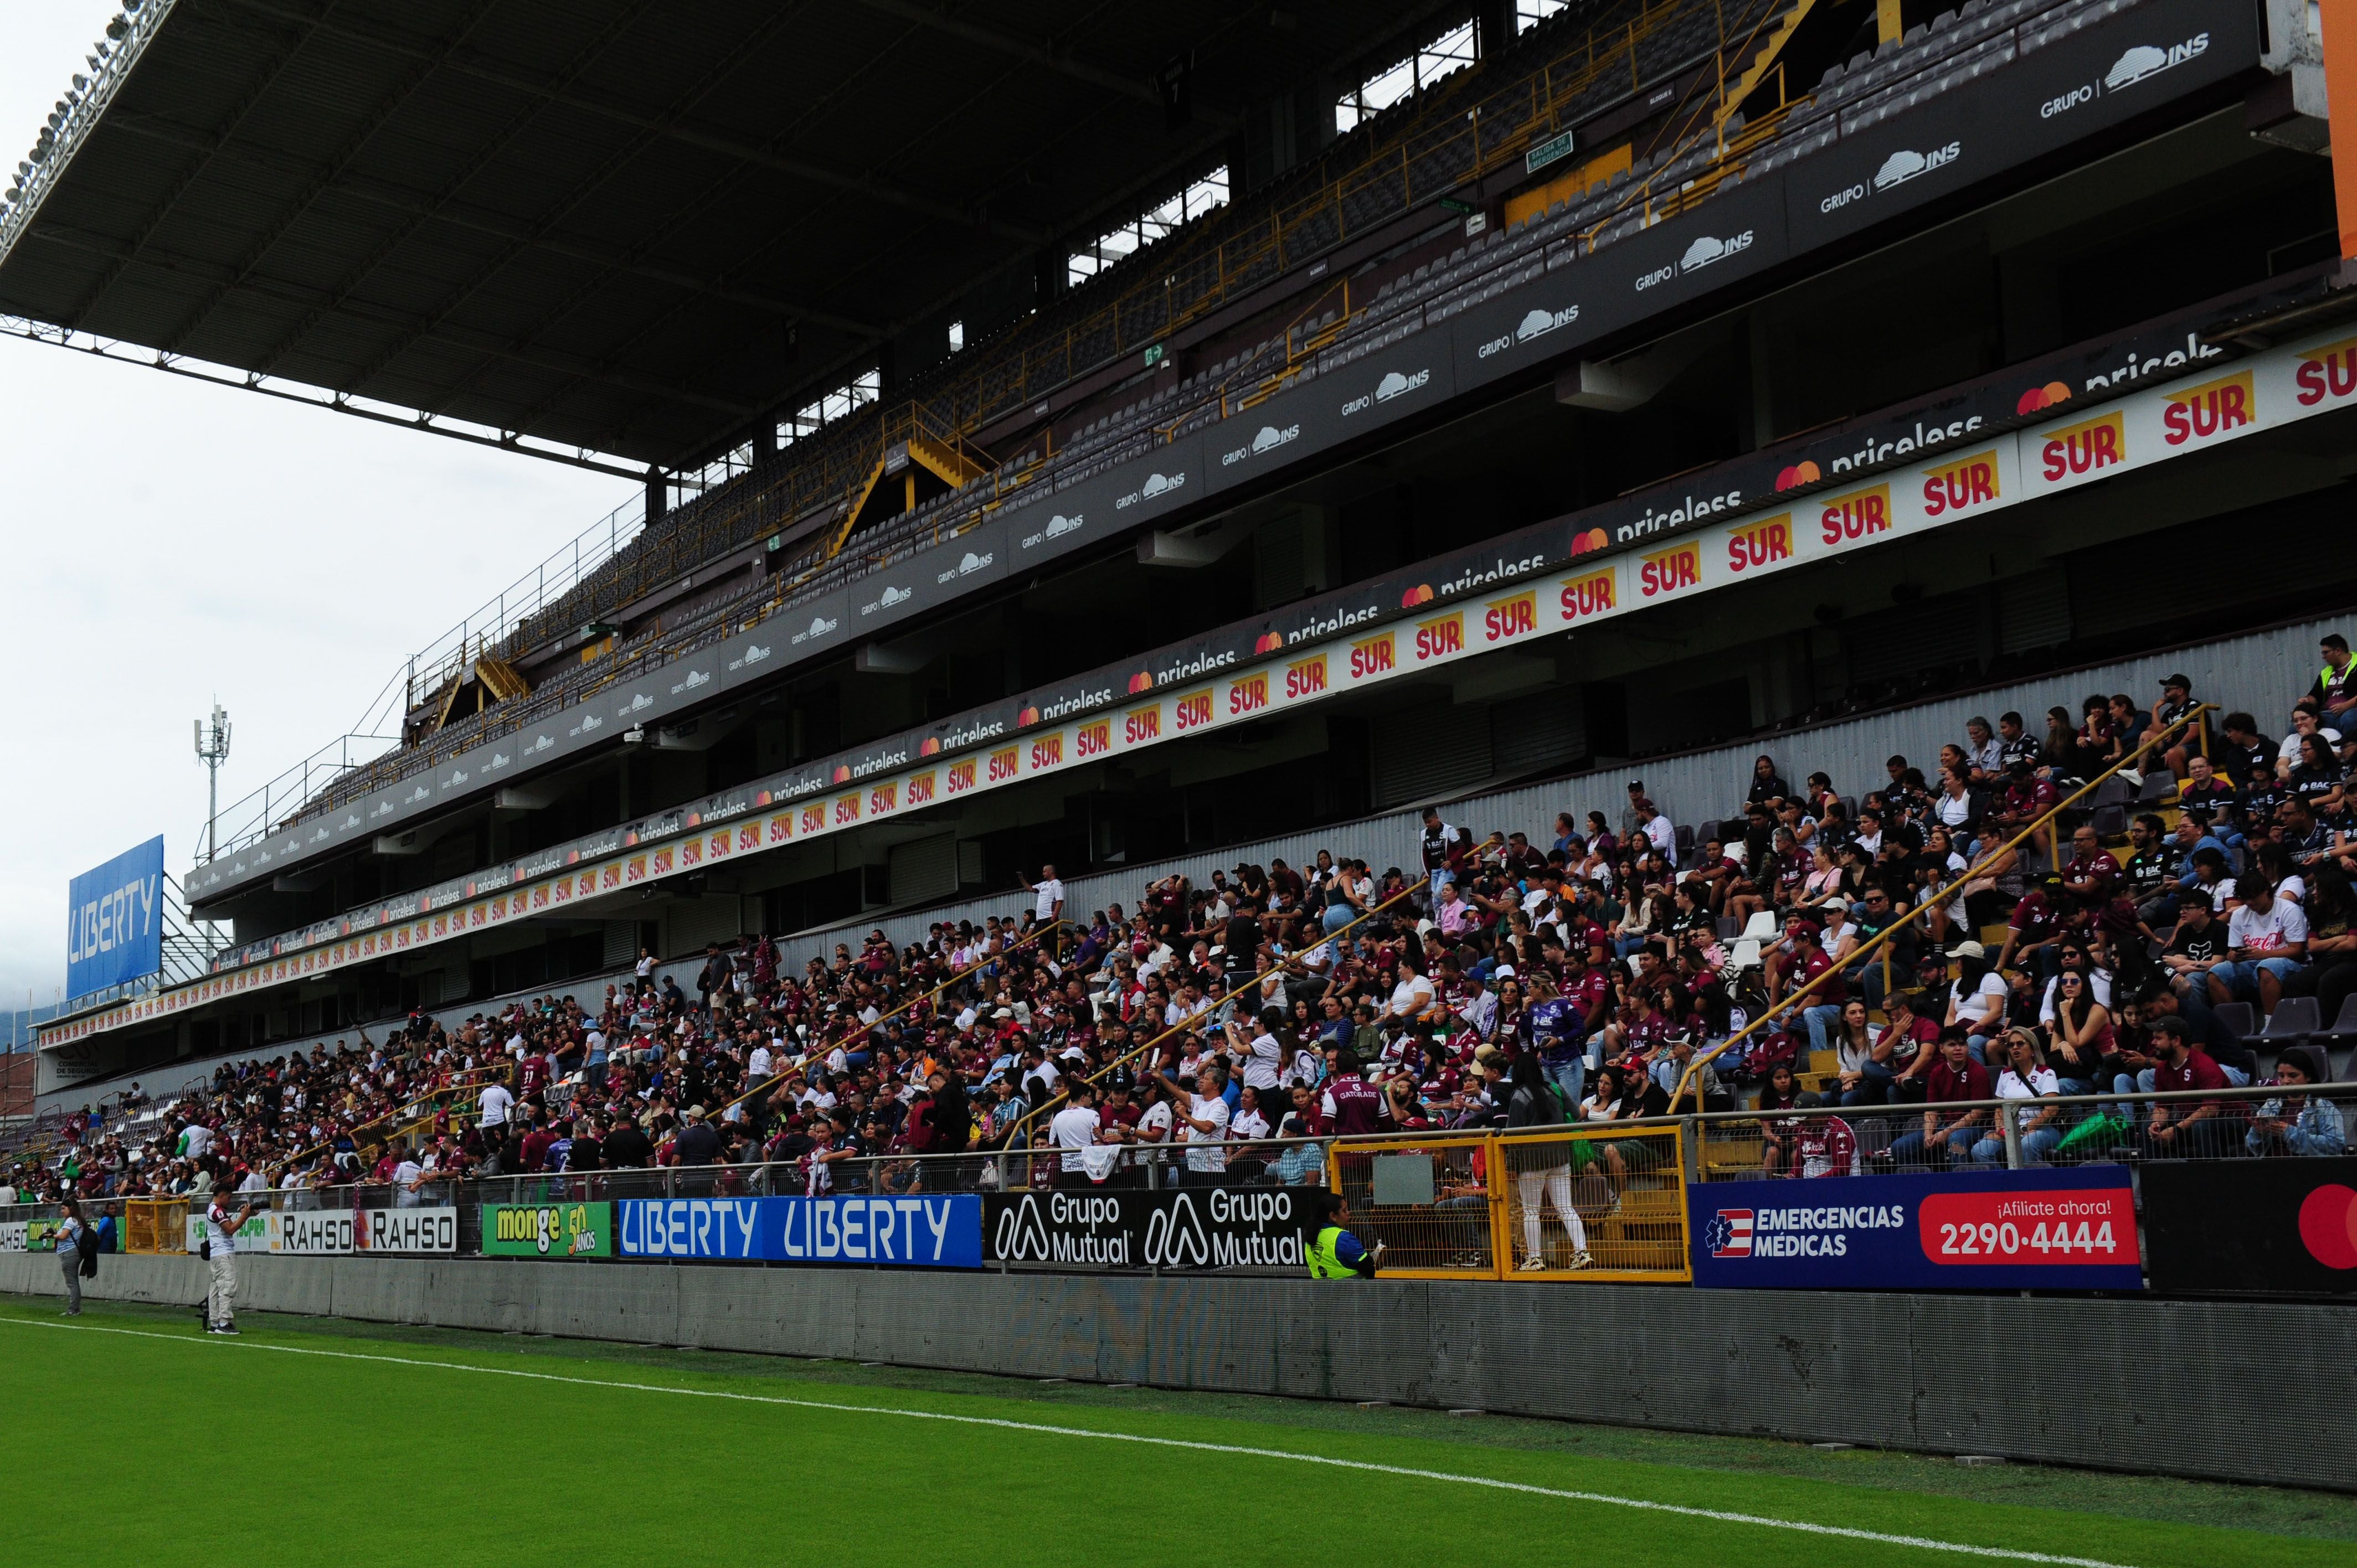 El sector de platea, en la gradería este del Estadio Ricardo Saprissa, estaba prácticamente lleno.